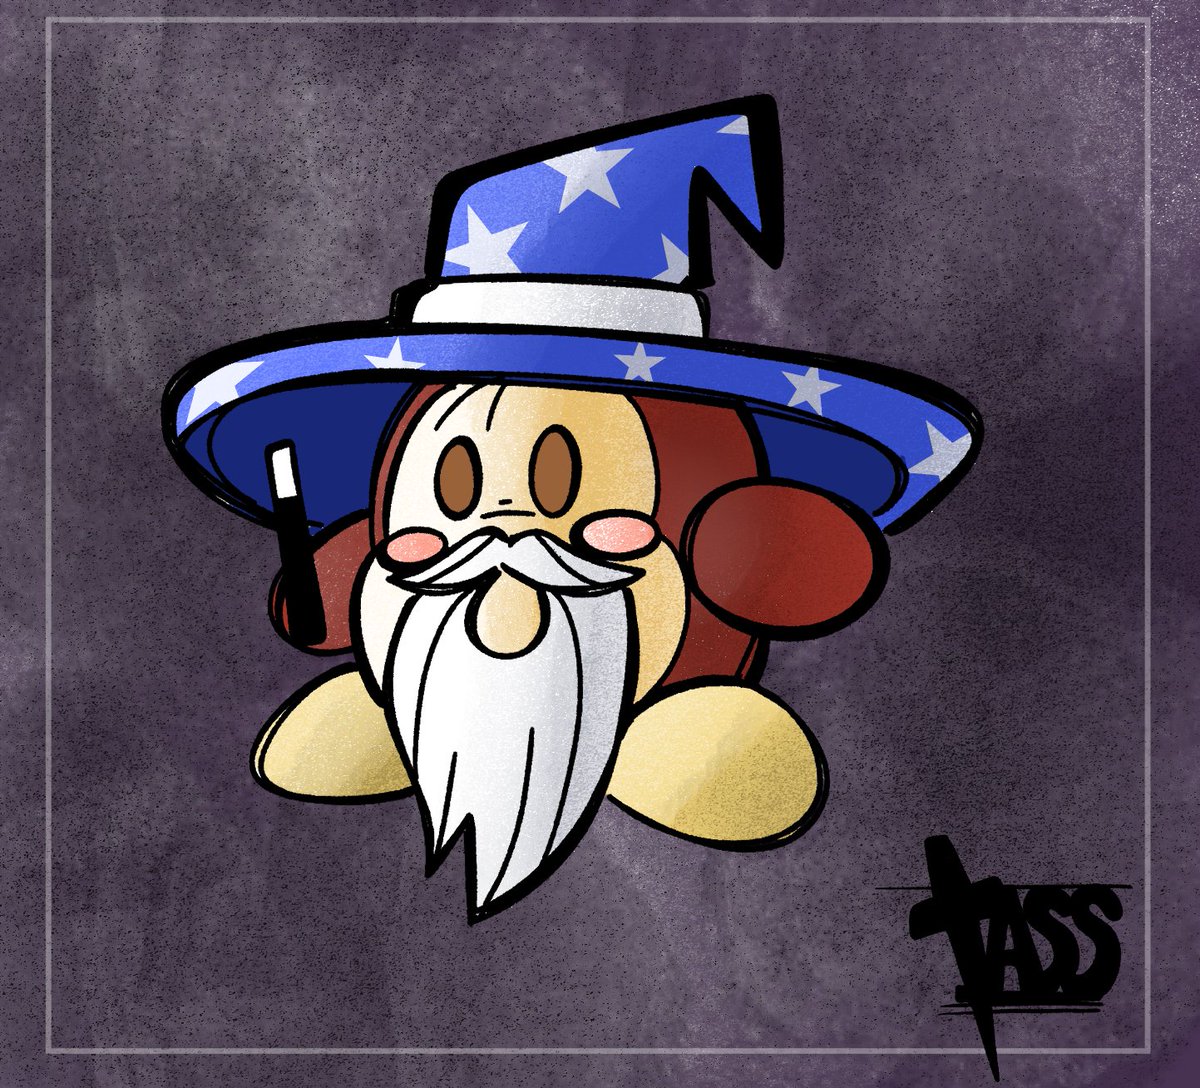 wizard dee wednesday is here!  

#Waddledeewednesday #waddledee #Kirby